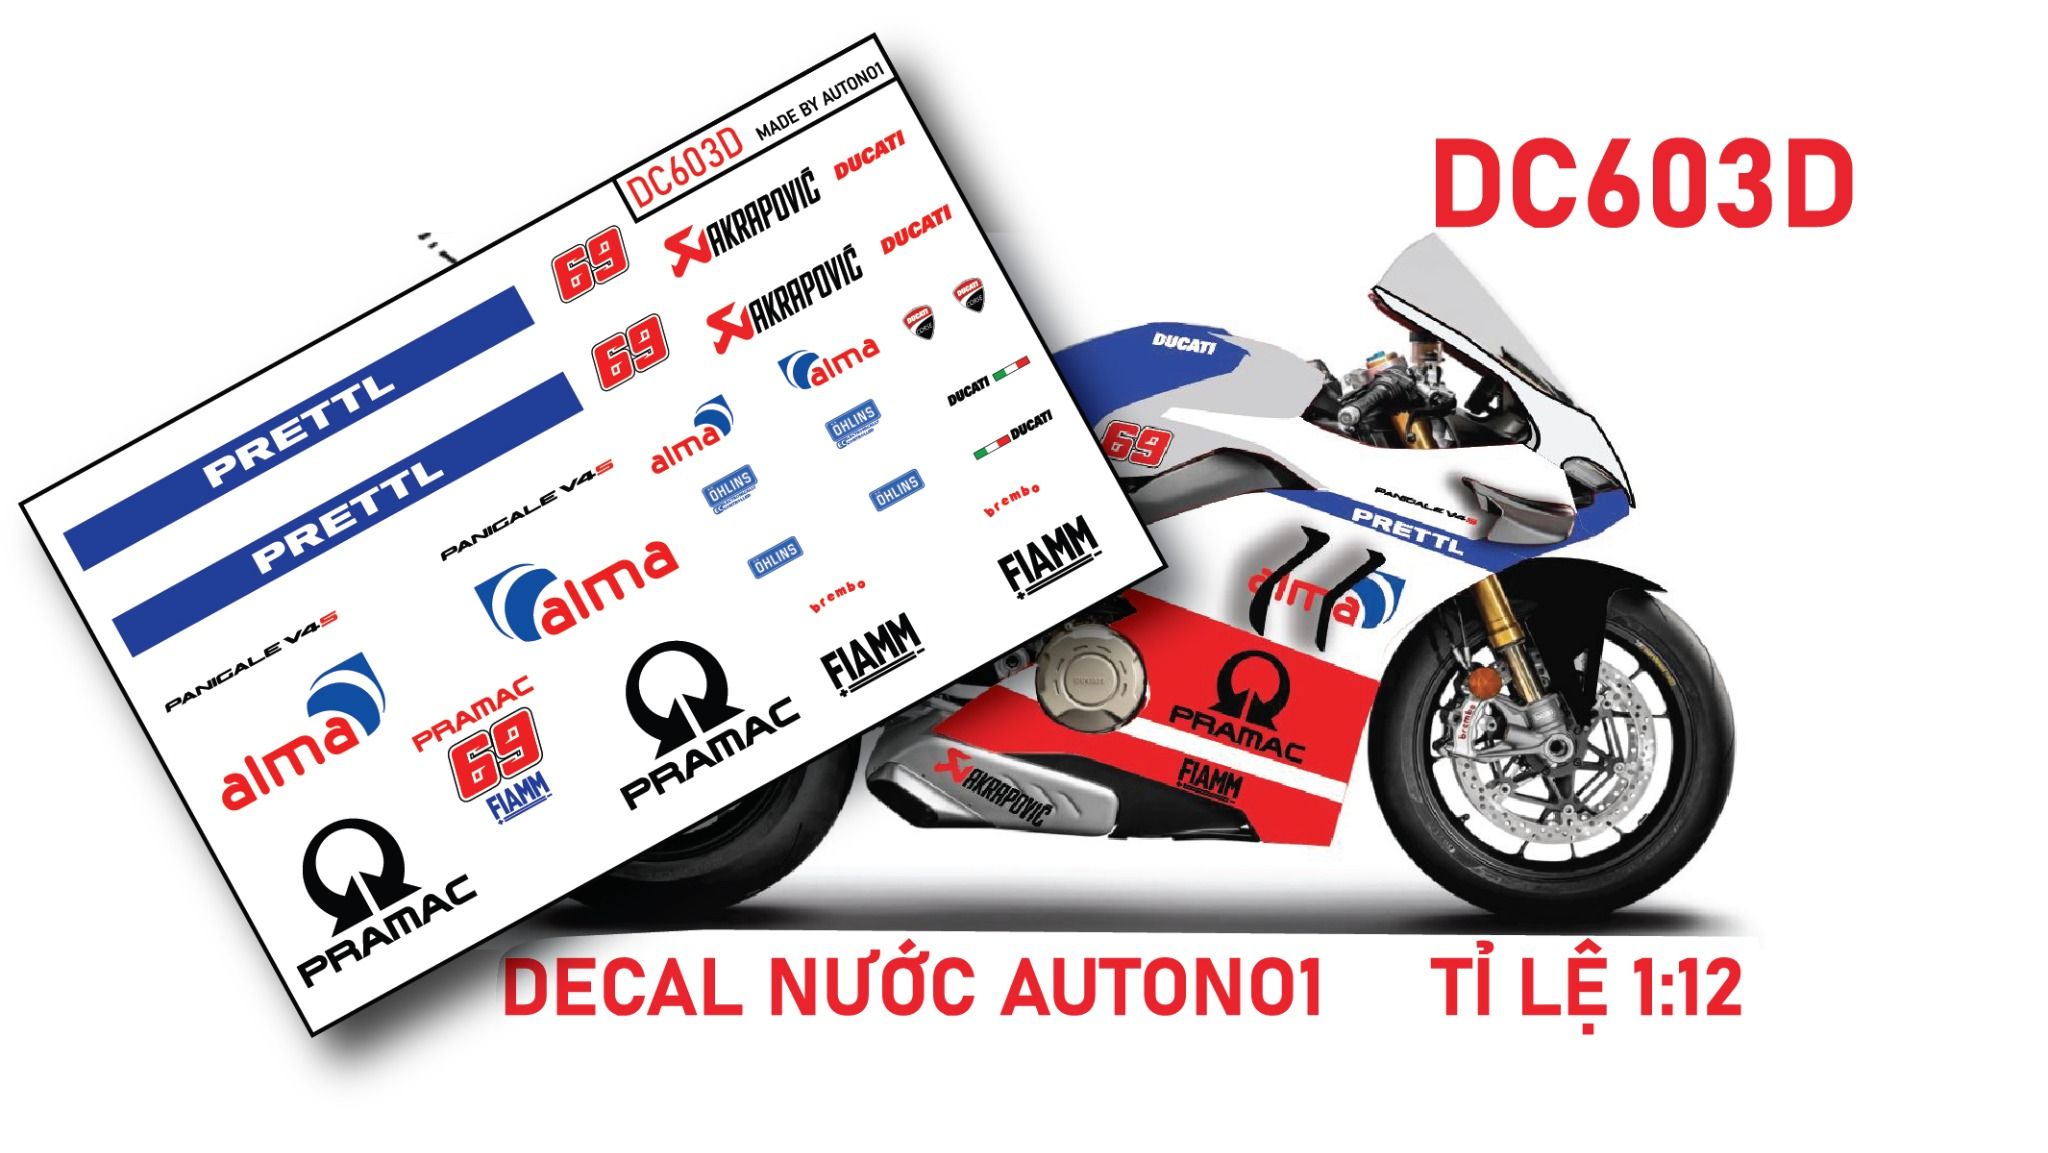  Decal nước độ Ducati Panigale V4S - Pramac Alma tỉ lệ 1:12 Autono1 DC603d 